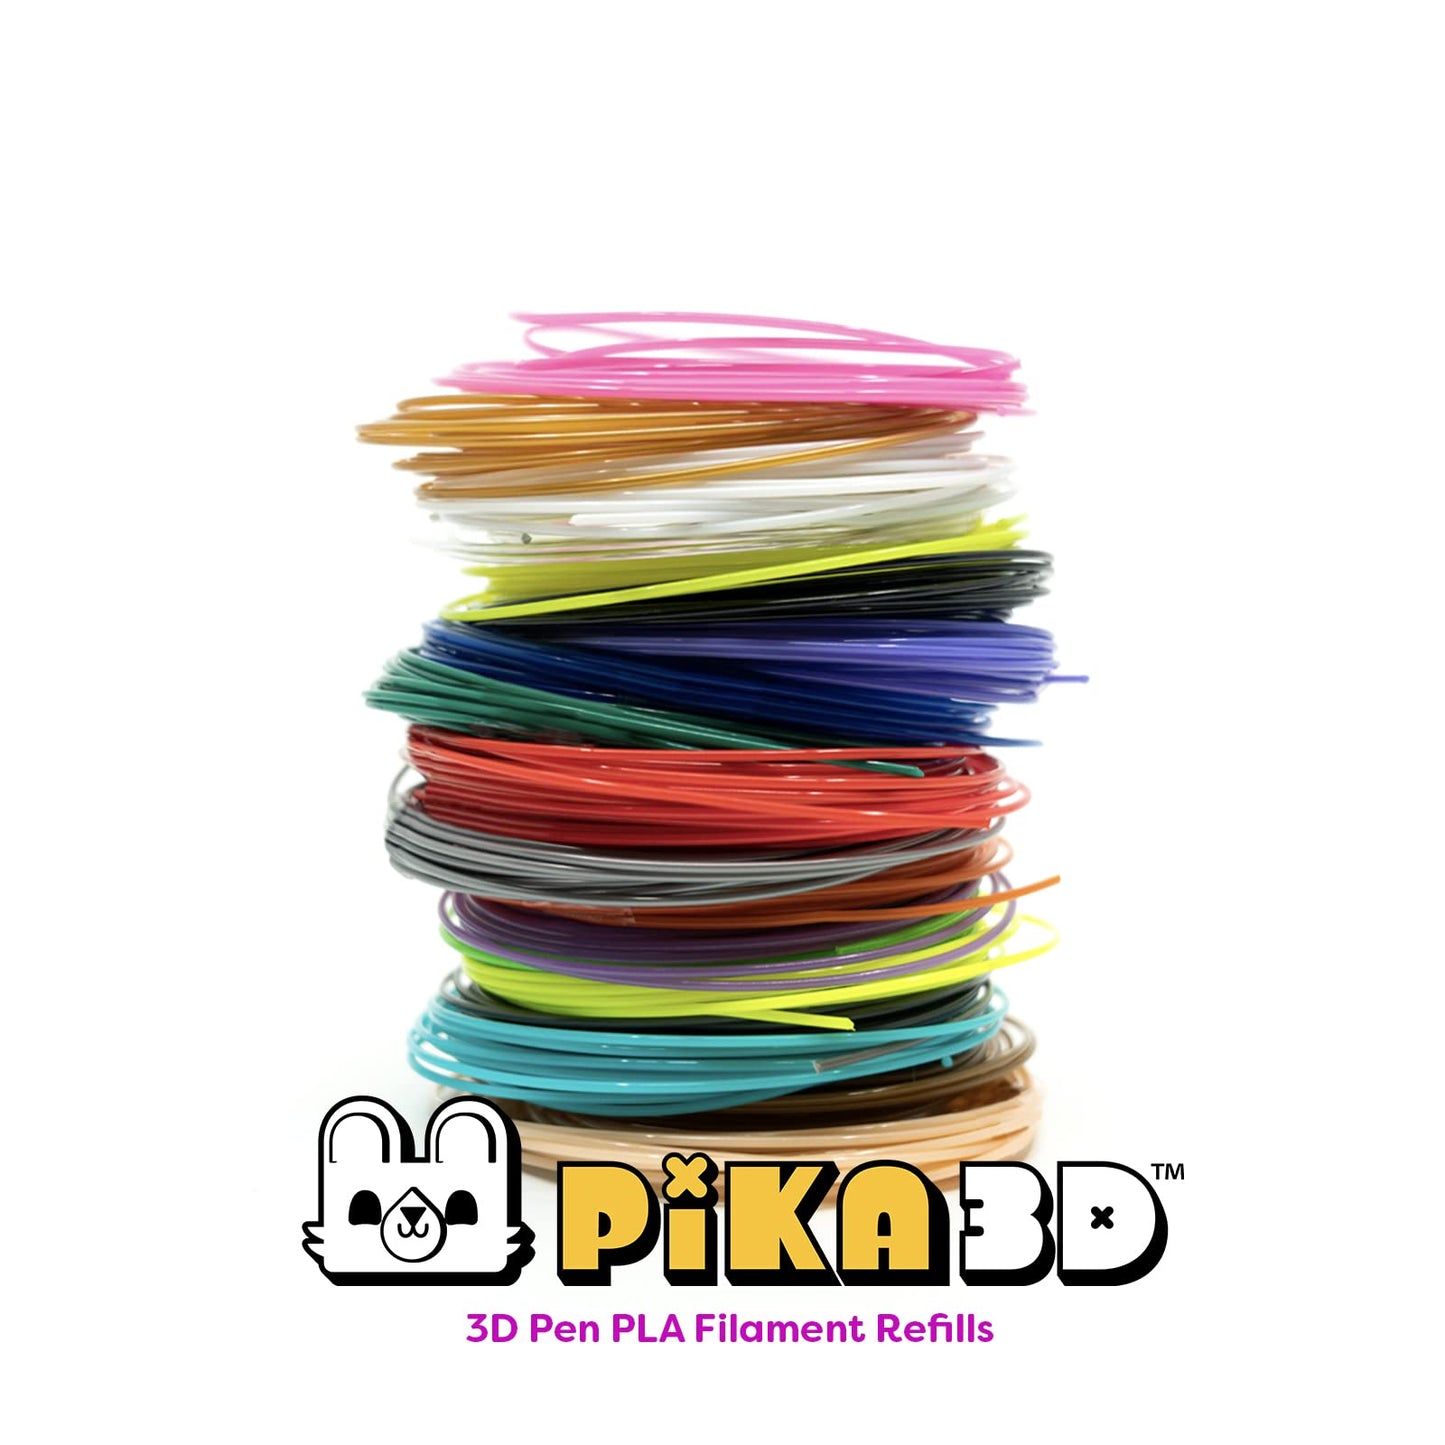 PIKA3D PLA 1.75mm Filament Refills, 20 Colors, 5 Meters Per Color